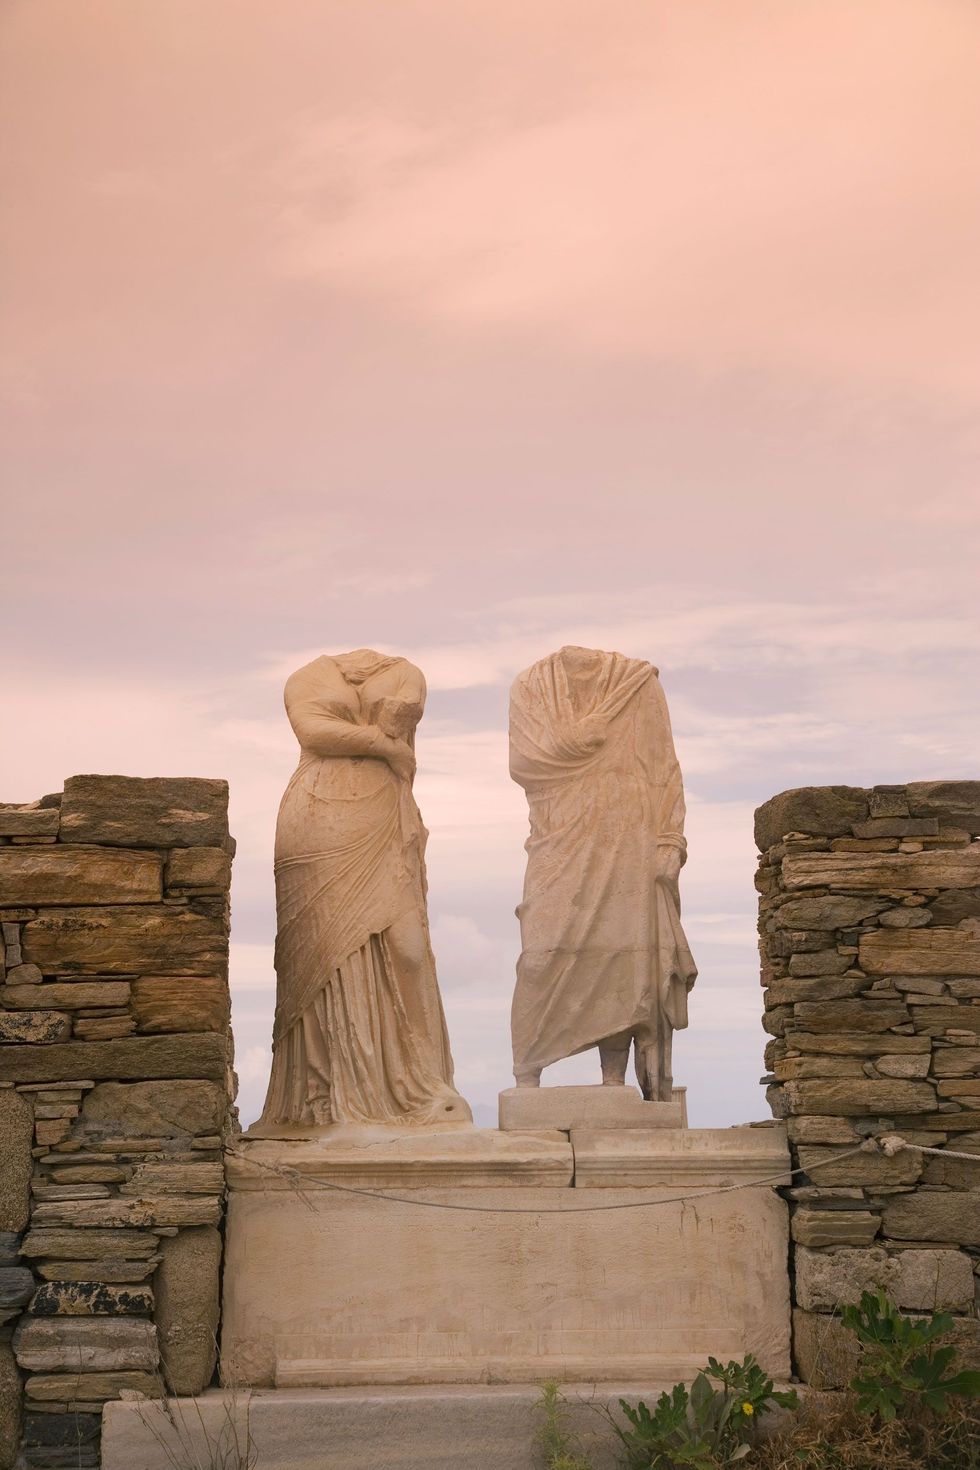 Deze beeldhouwwerken bewaken nog altijd het Unescowerelderfgoed Huis van Dioskurides en Cleopatra op het eiland Delos in de oudheid een van de belangrijkste eilanden van de Cycladen